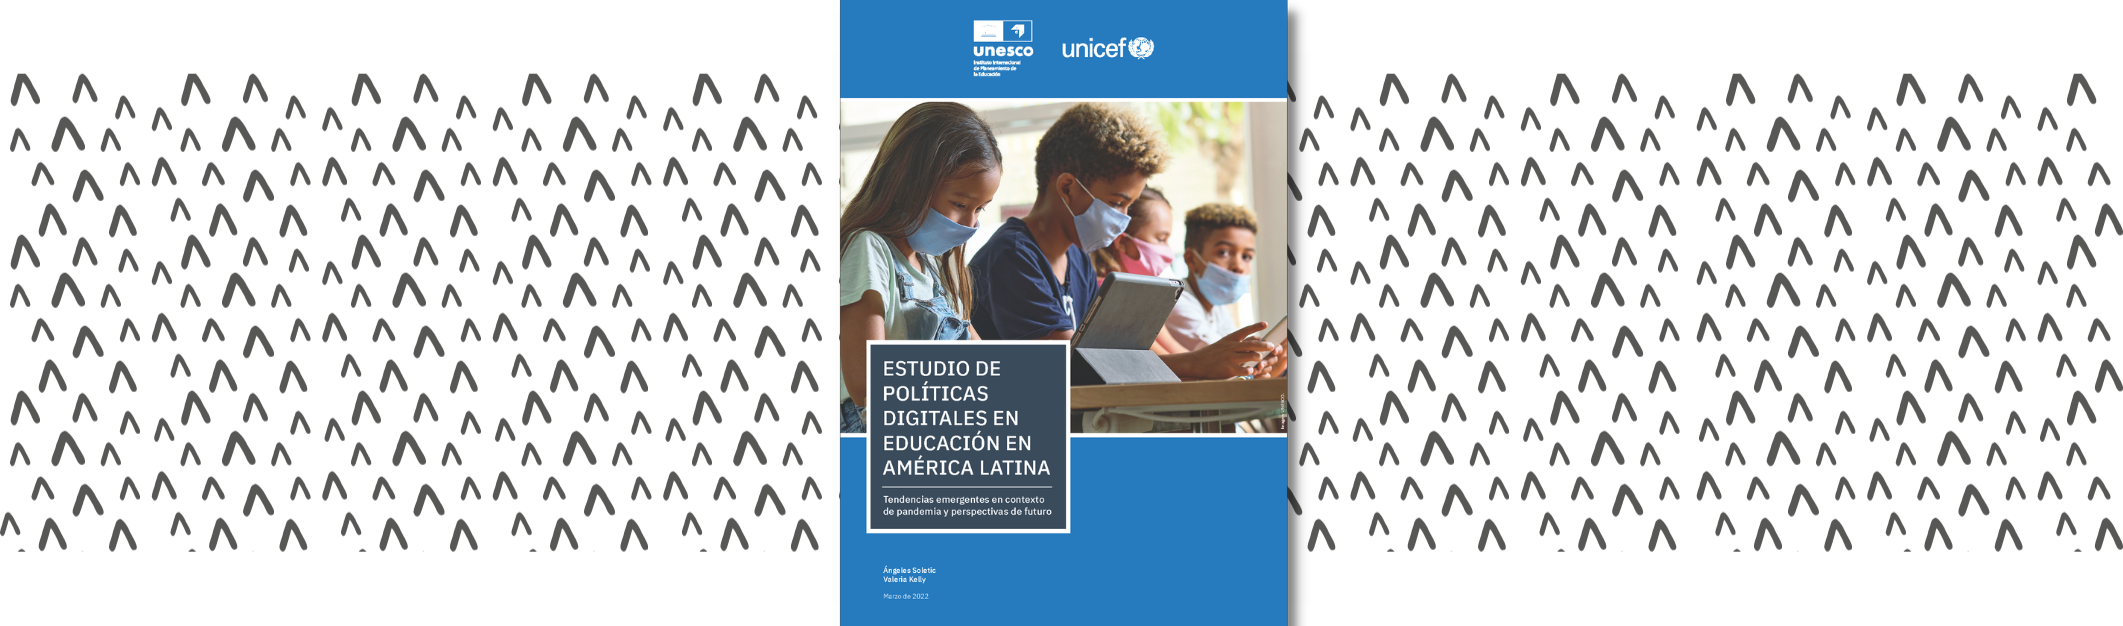 Estudio de políticas digitales en educación en América Latina